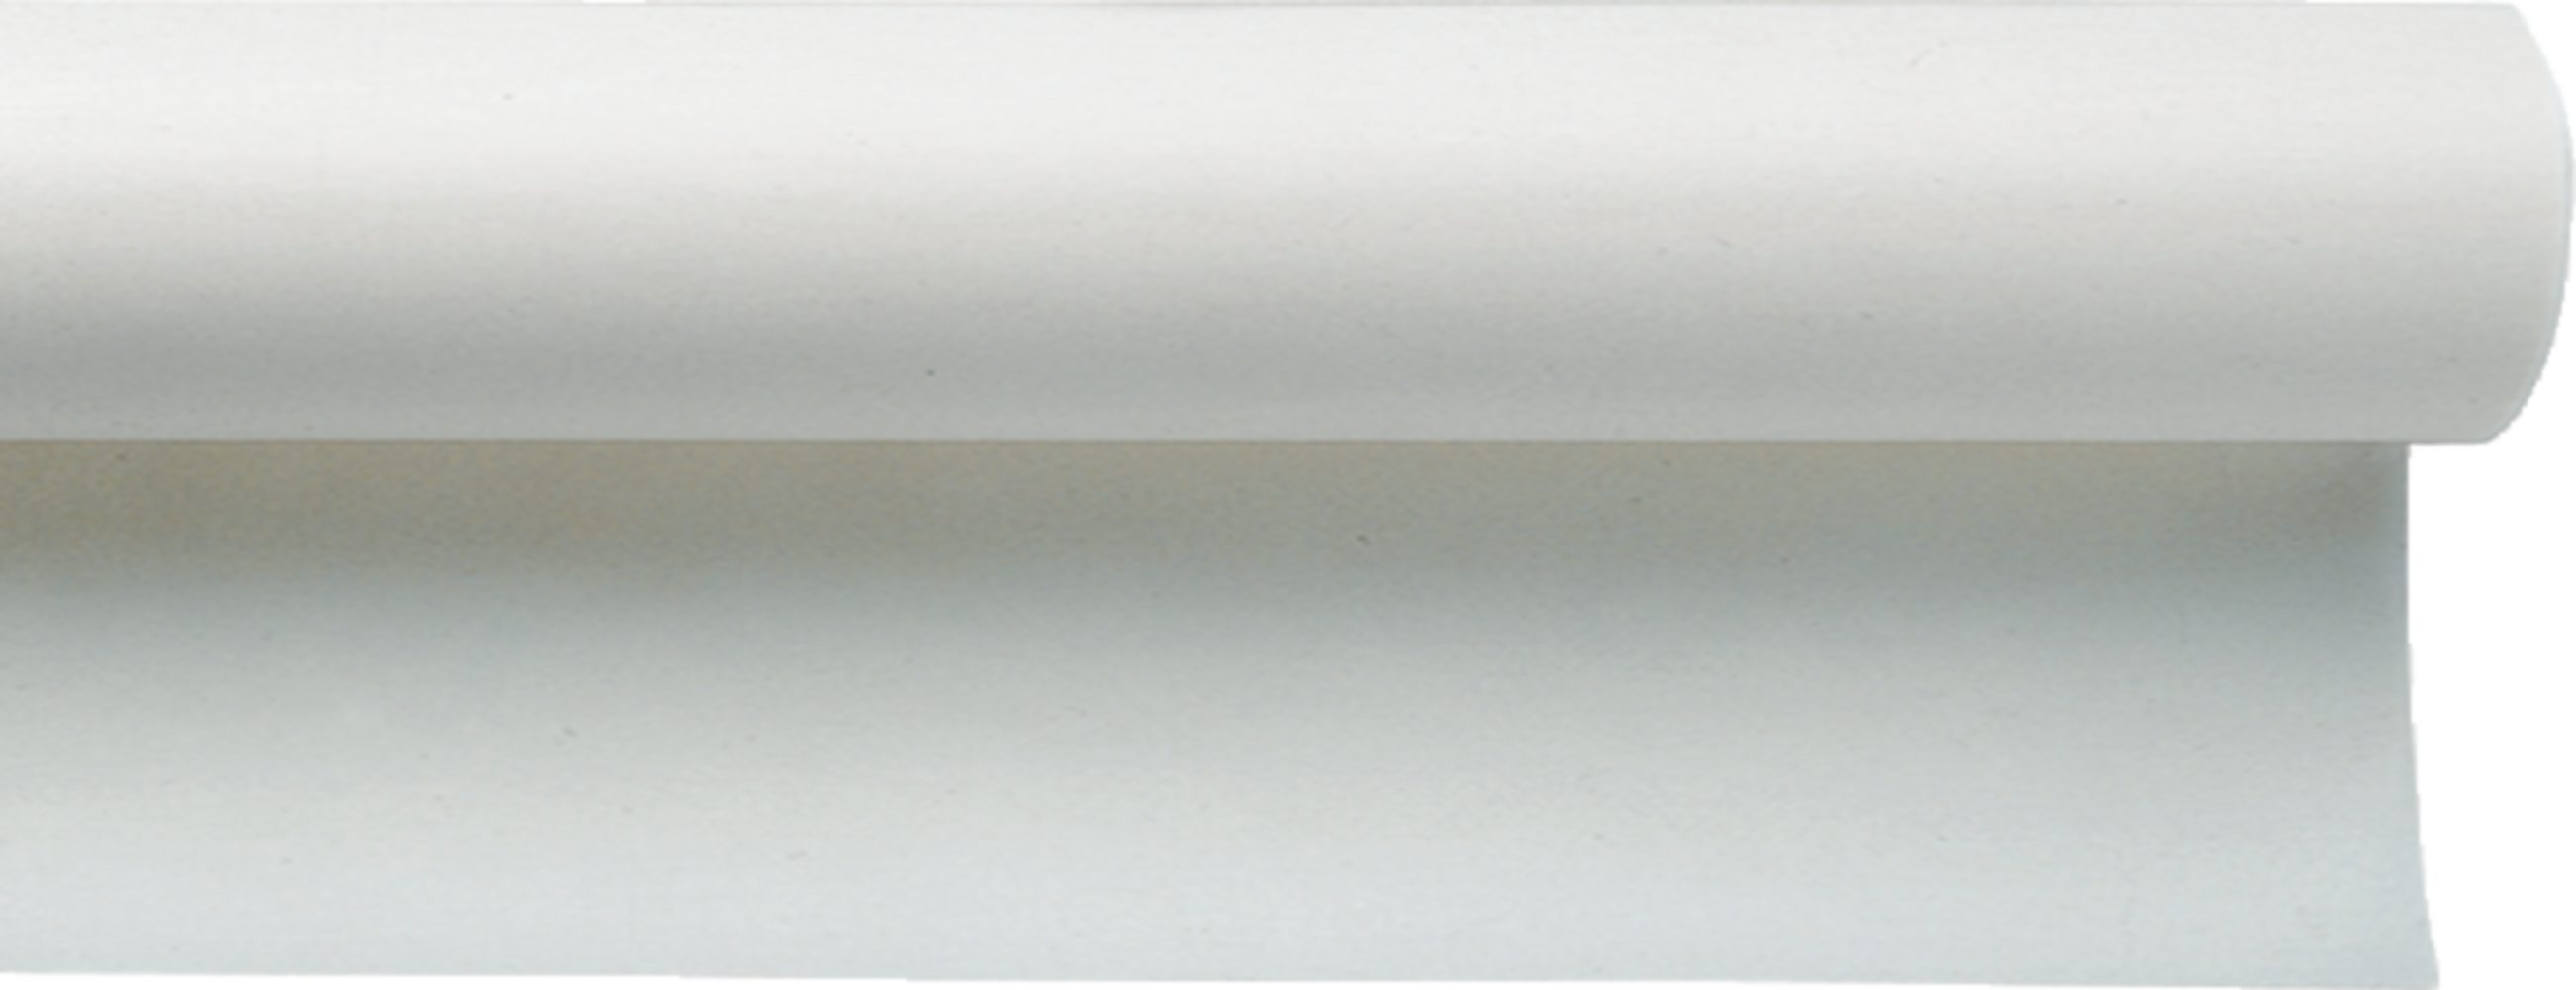 BRUNNEN Zeichenpapier BRUNNEN Skizzierpapier-Rolle weiß transparent 500×31cm 40g/m² PP